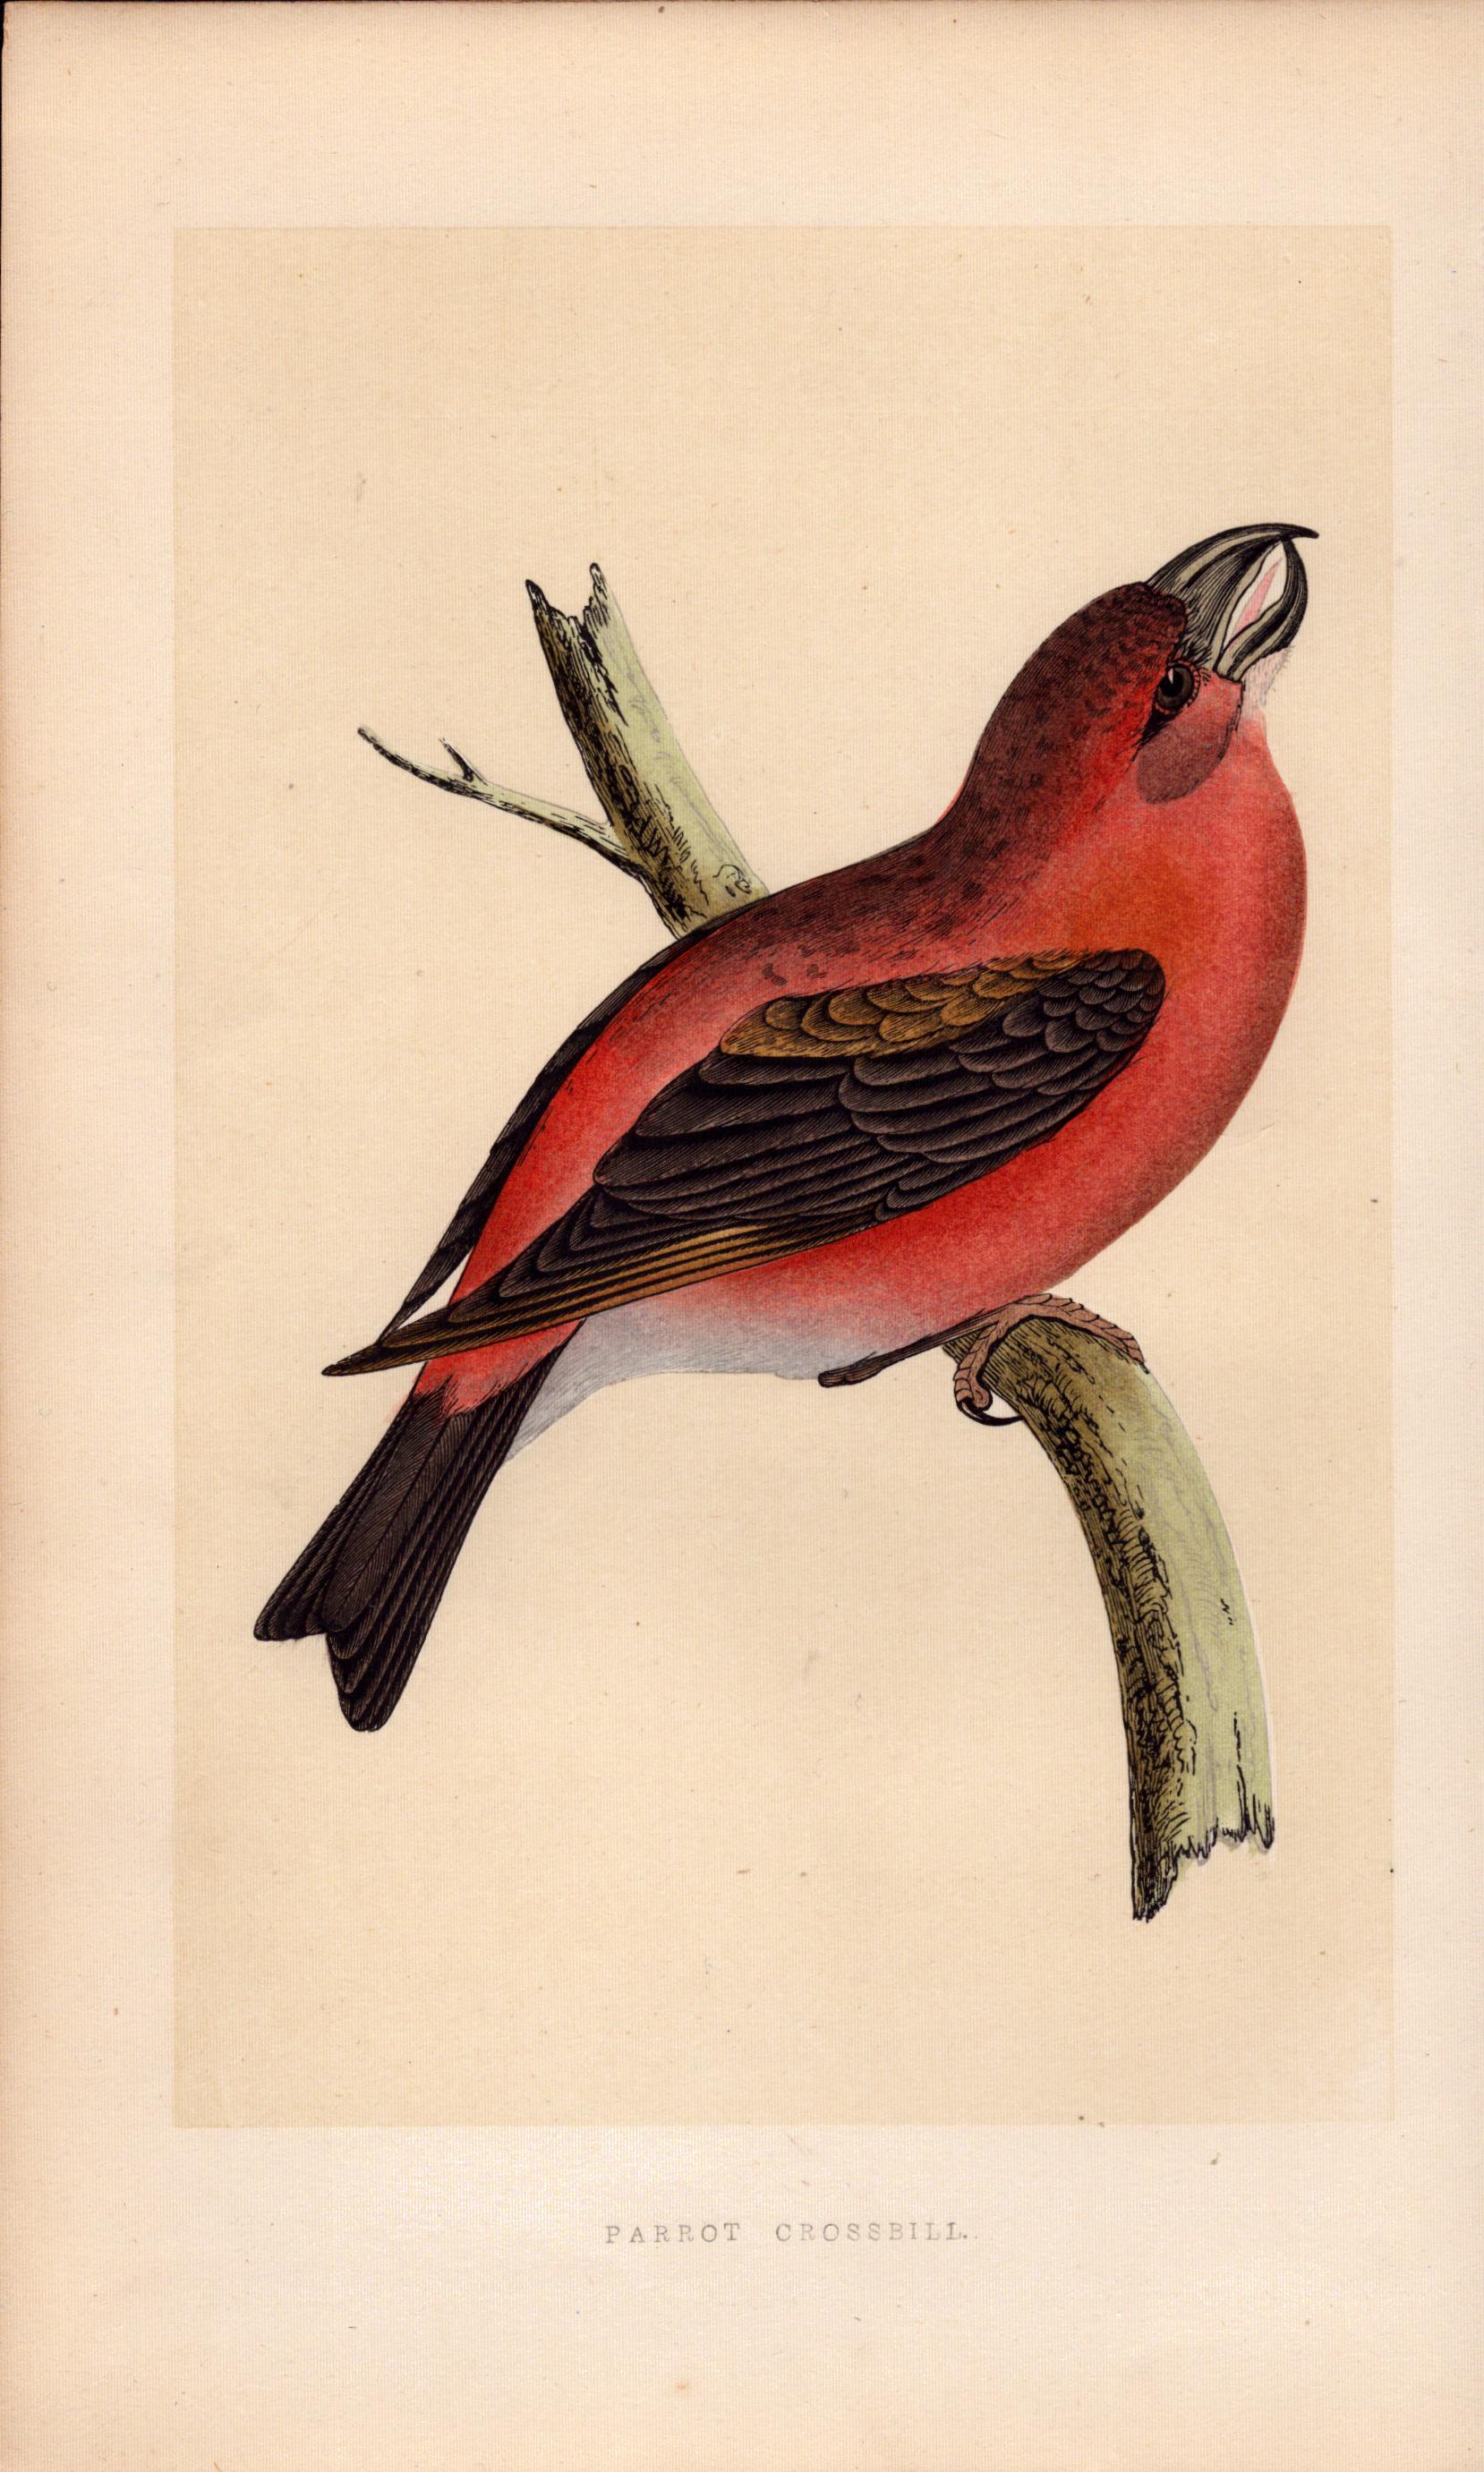 Parrott Crossbill Rev Morris Antique History of British Birds Engraving.